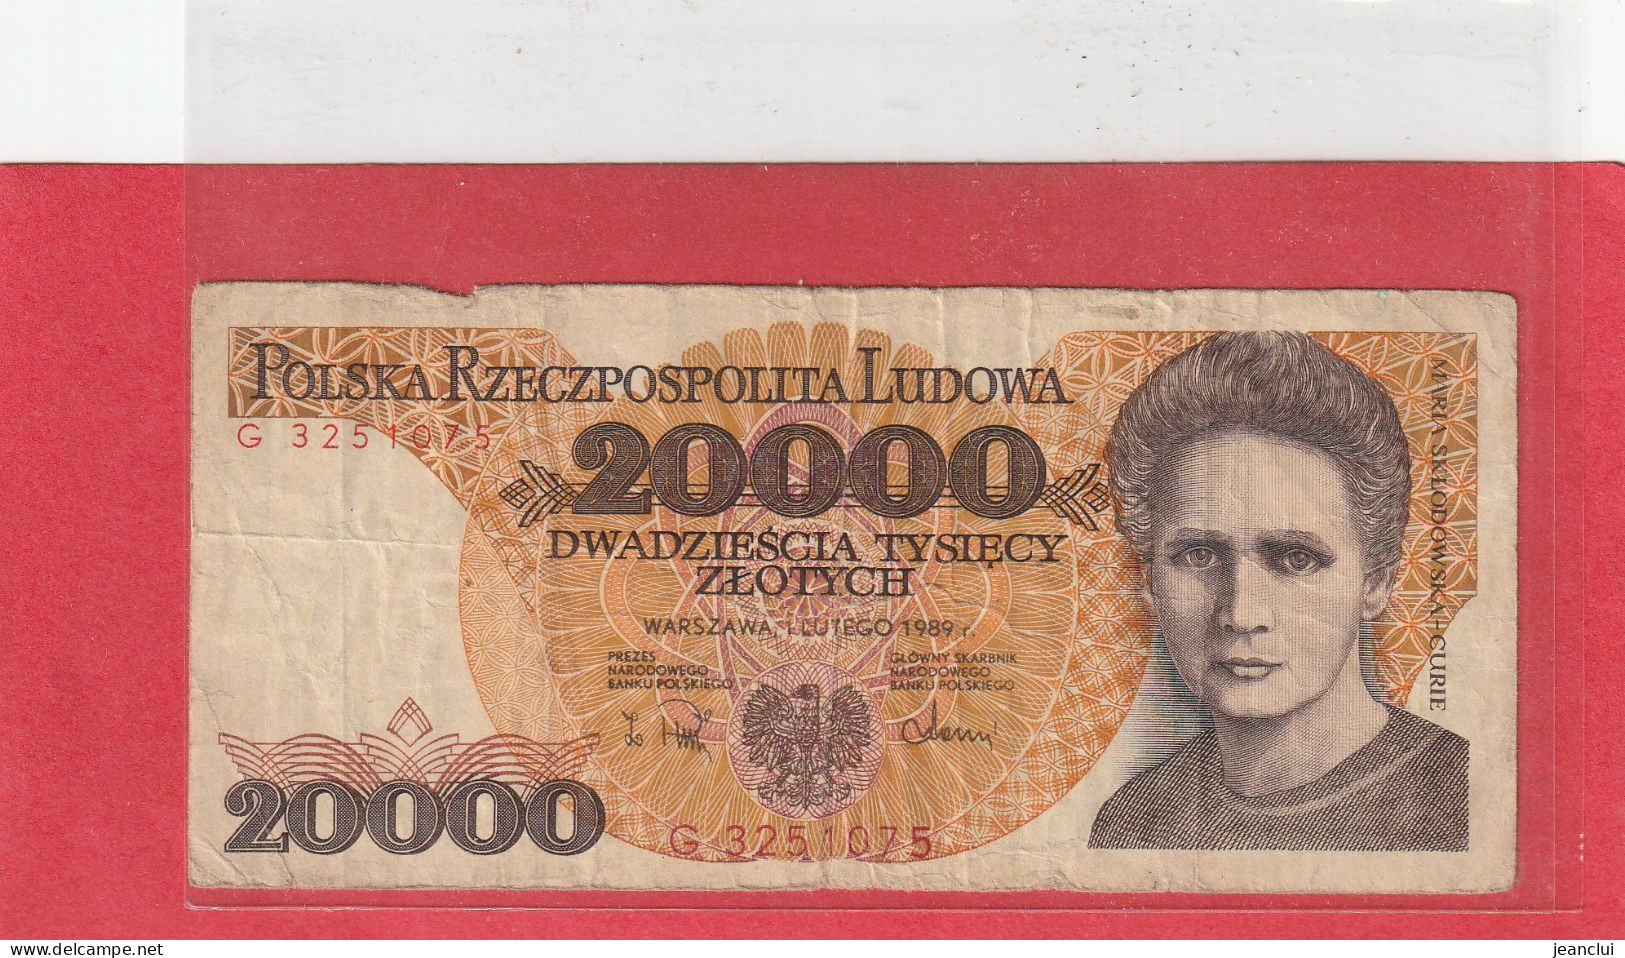 NARODOWY BANK POLSKI . 20.000 ZLOTYCH .  MARIA SKLODOWSKA-CURIE . 1-2-1989 .  N° G 3251075 . 2 SCANNES . BILLET USITE - Pologne